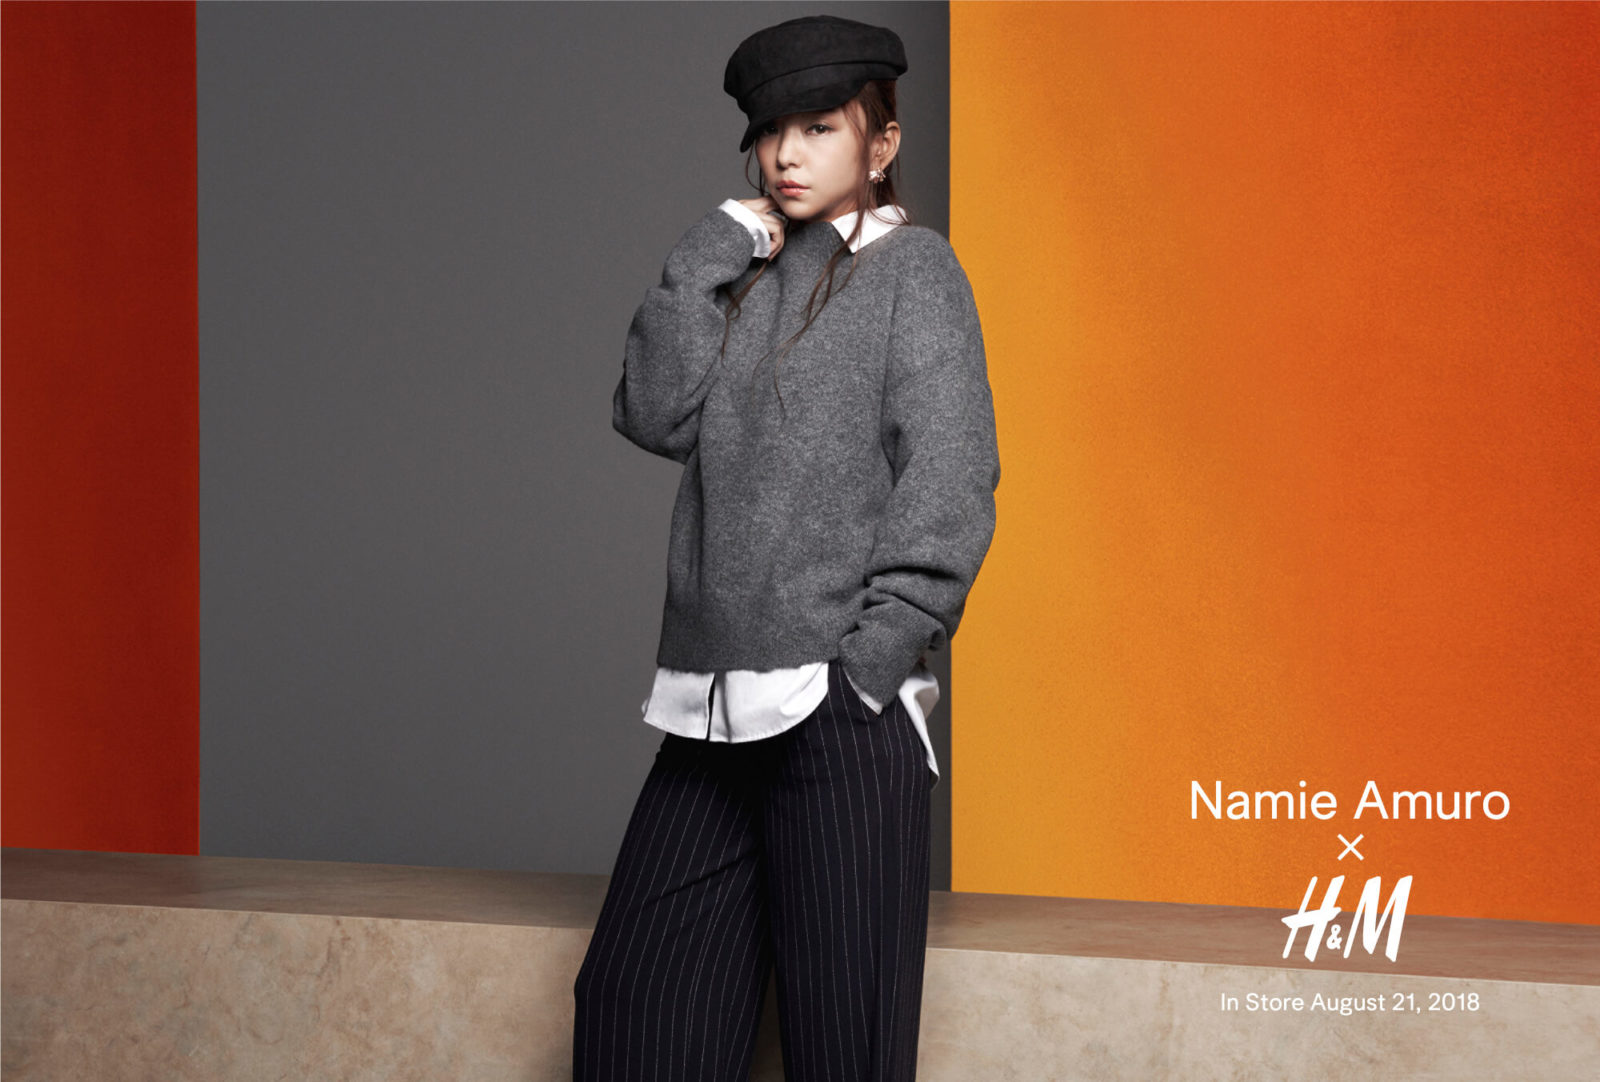 安室奈美恵、引退前最後のファッション・キャンペーンでファーストルックを先行公開サムネイル画像!